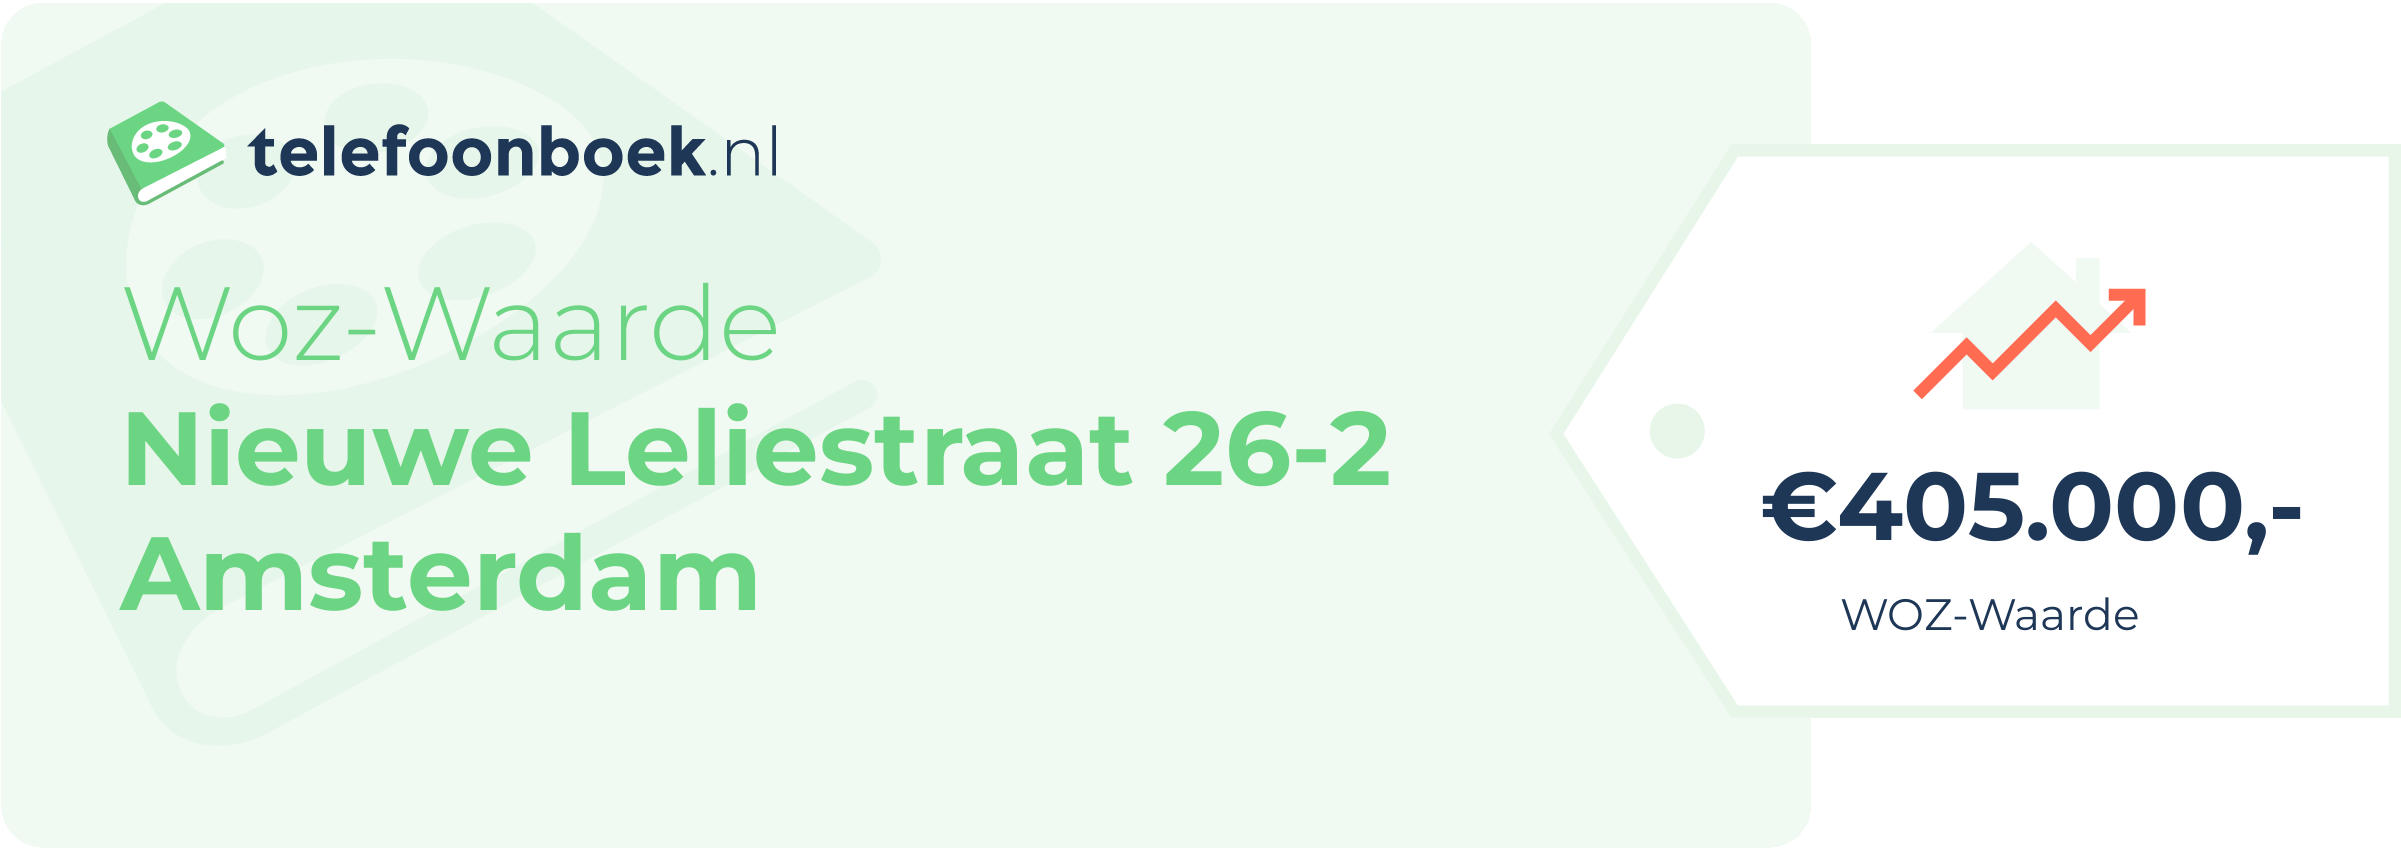 WOZ-waarde Nieuwe Leliestraat 26-2 Amsterdam